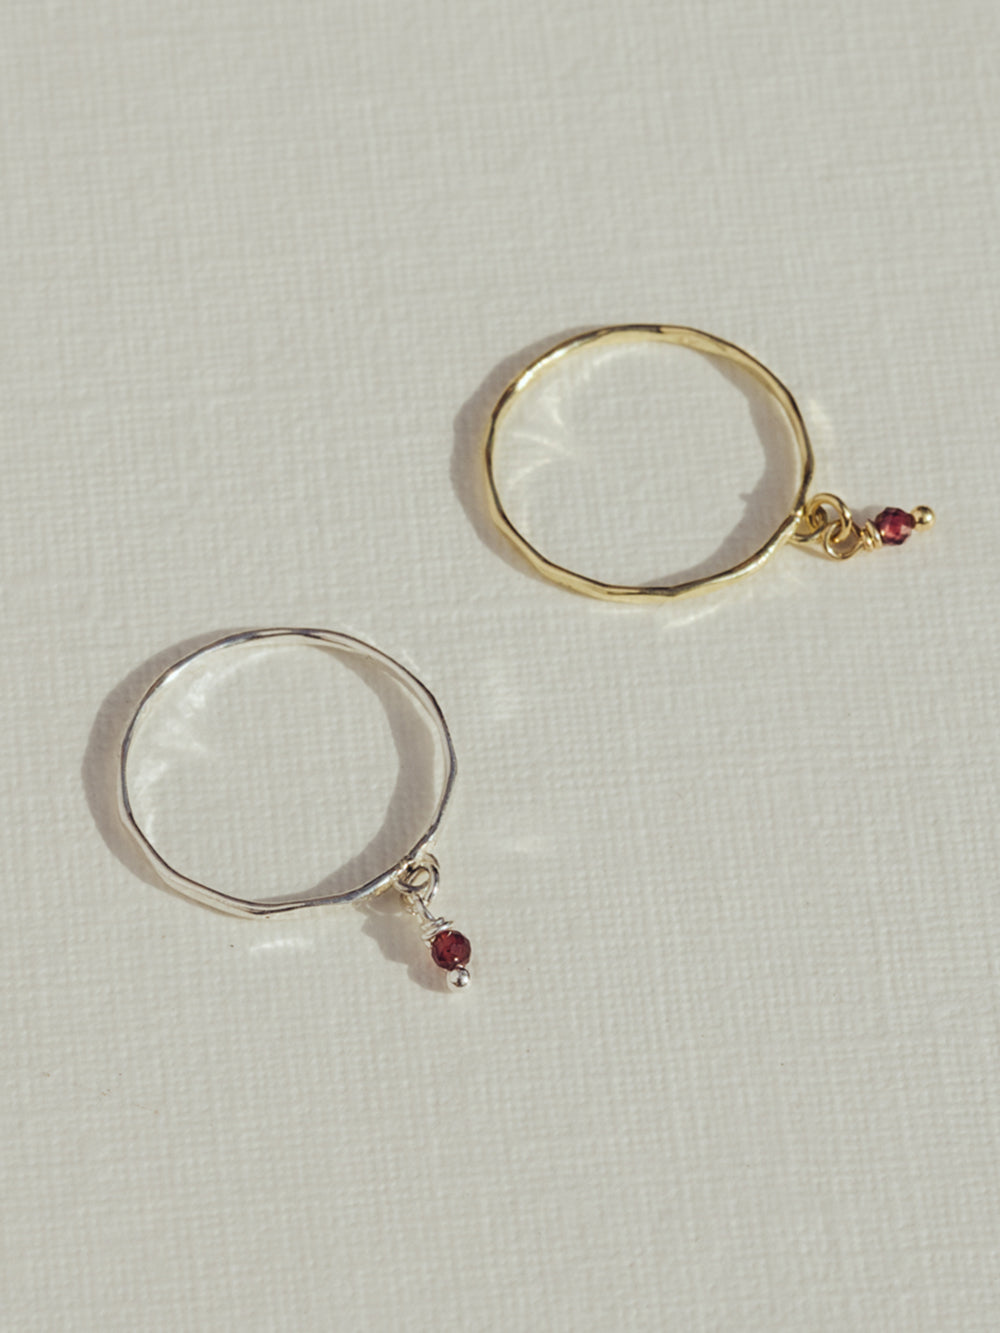 Birthstone ring January - Red garnet | 925 Sterling Silver